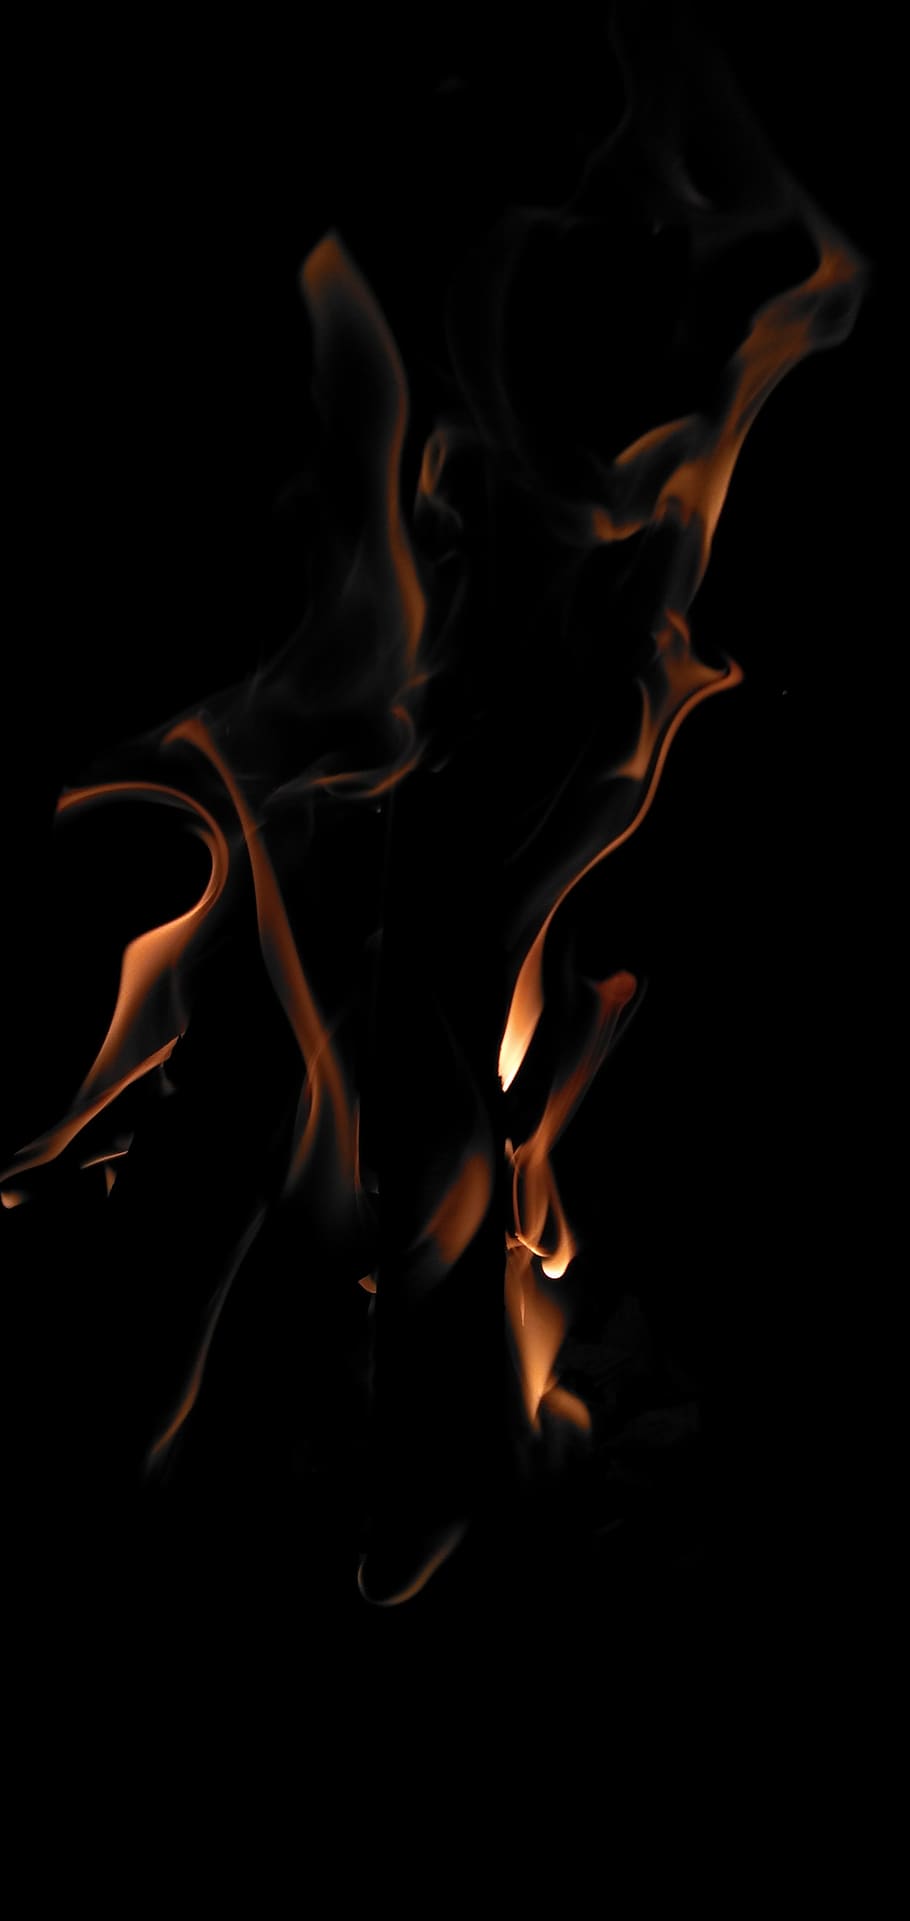 api, panas, hangat, perapian, membakar, pembakaran, latar belakang hitam, api - fenomena alam, suhu panas, gerakan